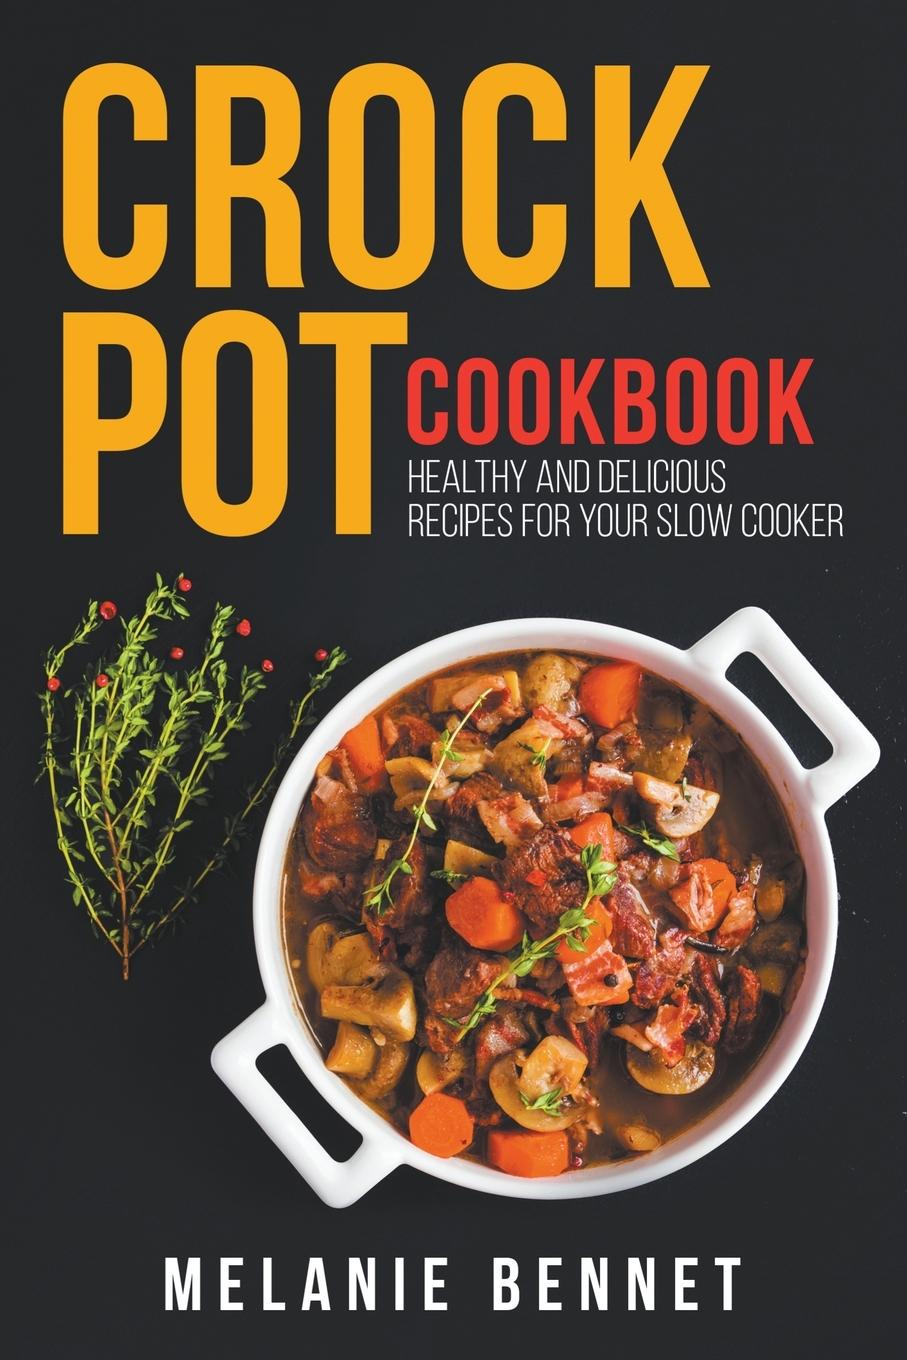 Carte Crock Pot Cookbook 